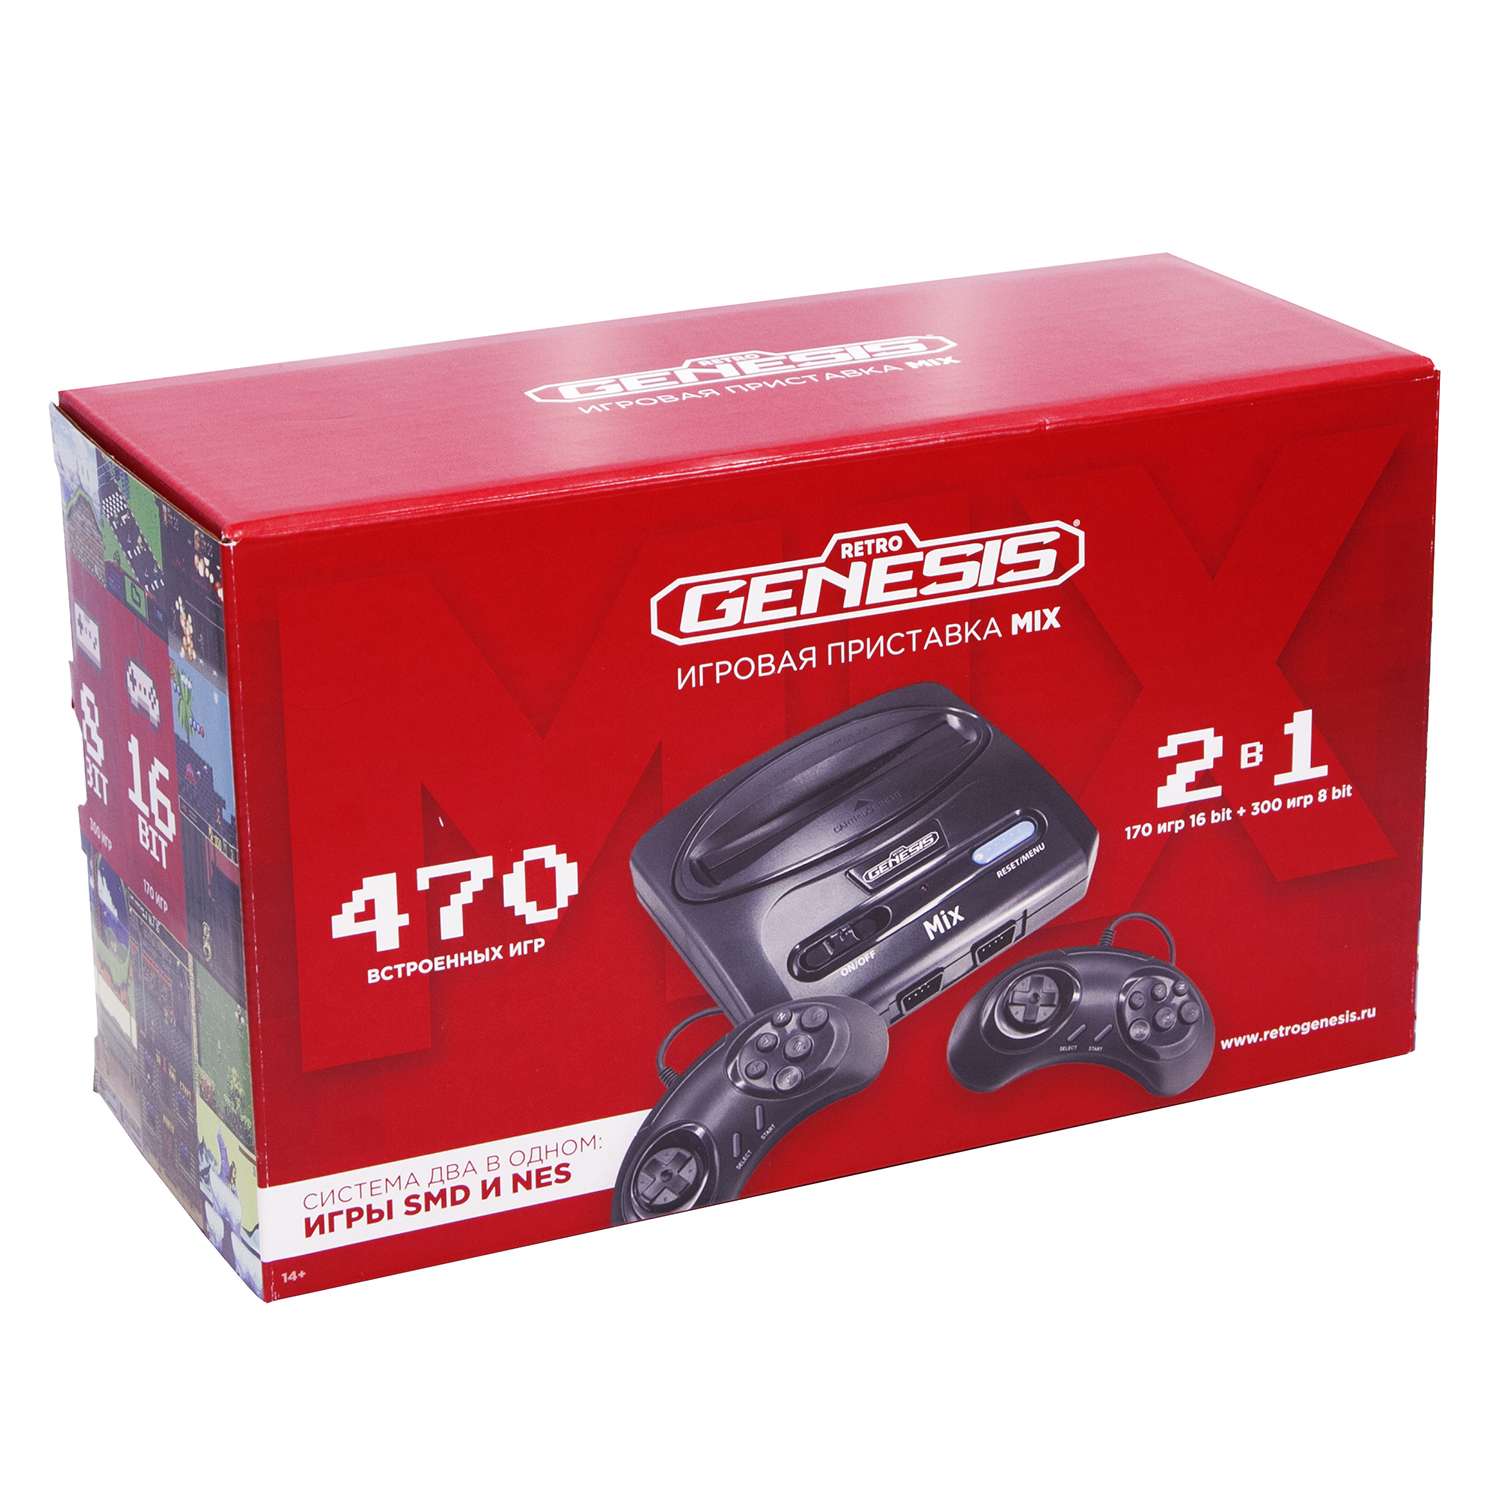 Игровая приставка для детей Retro Genesis Mix 8+16Bit + 470 игр AV 2 проводных джойстика - фото 1